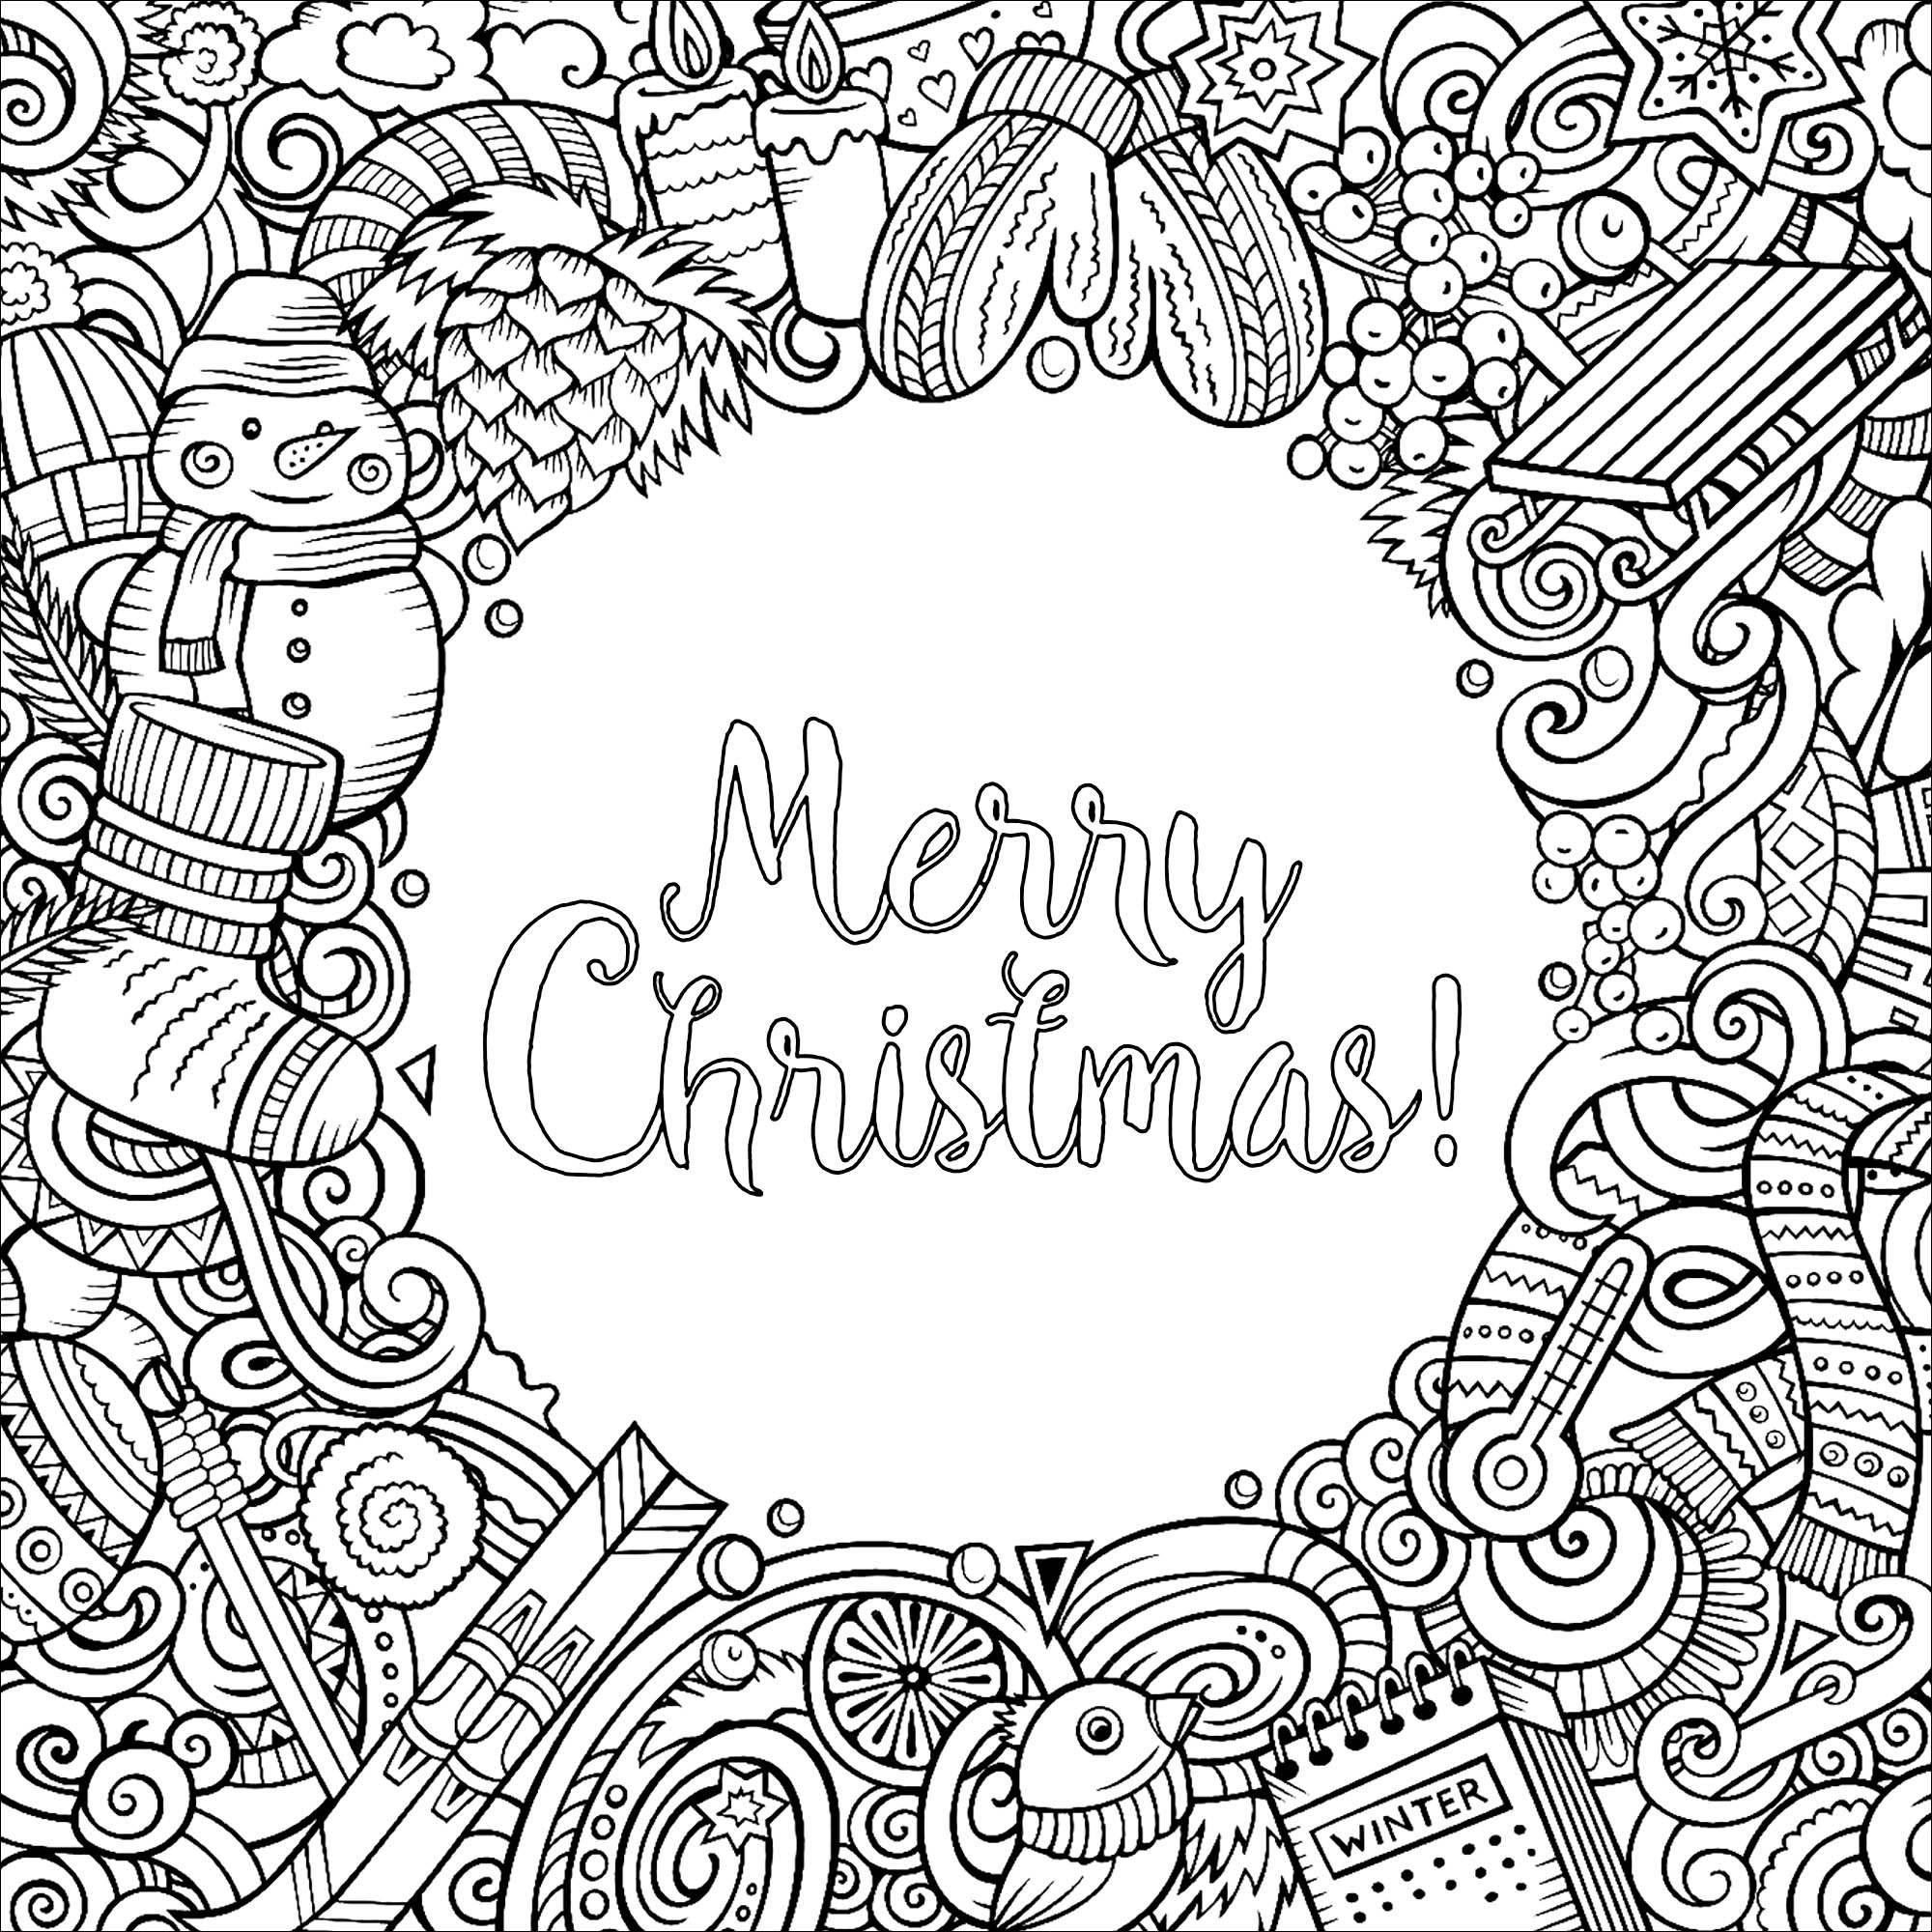 Scarabocchi vettoriali di cartoni animati invernali - disegno della cornice quadrata, con il testo 'Buon Natale' al centro.